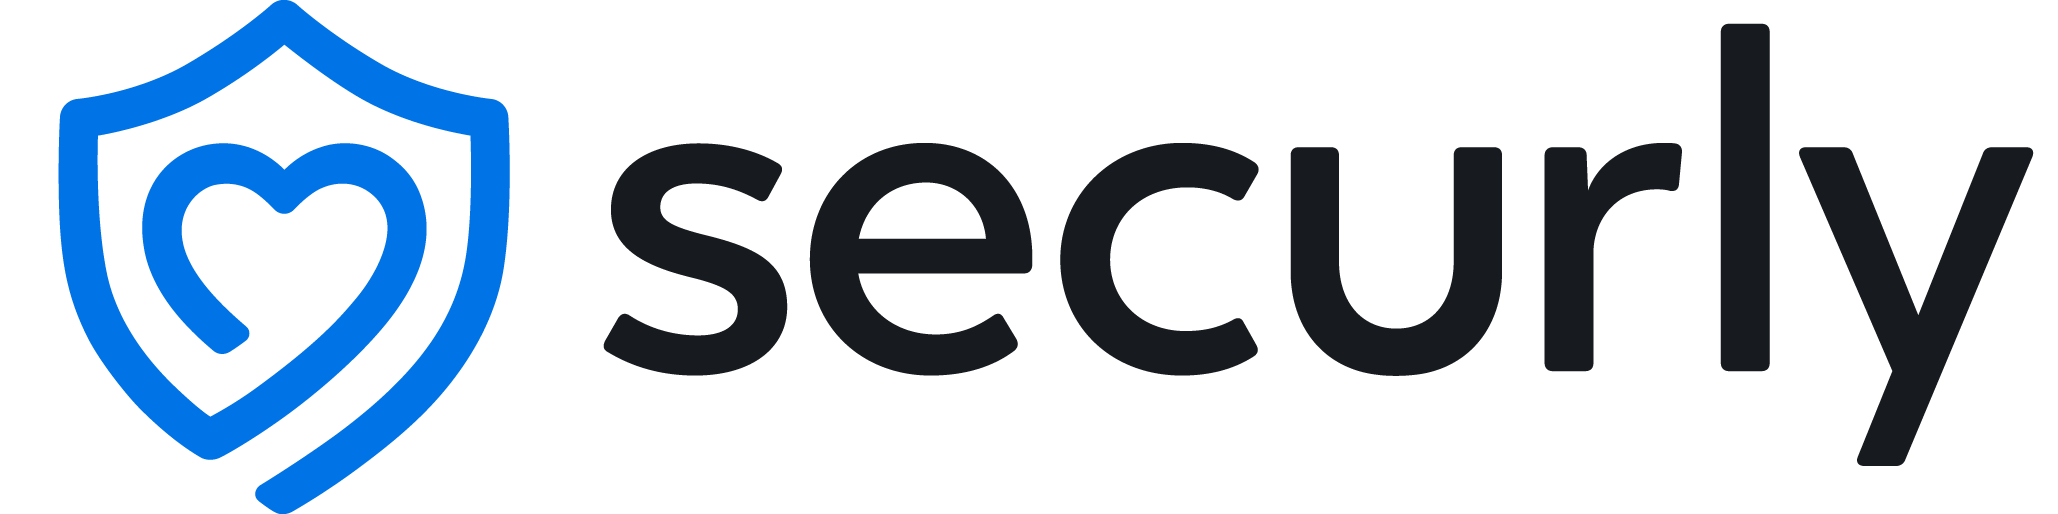 Securly, Inc. Company Logo